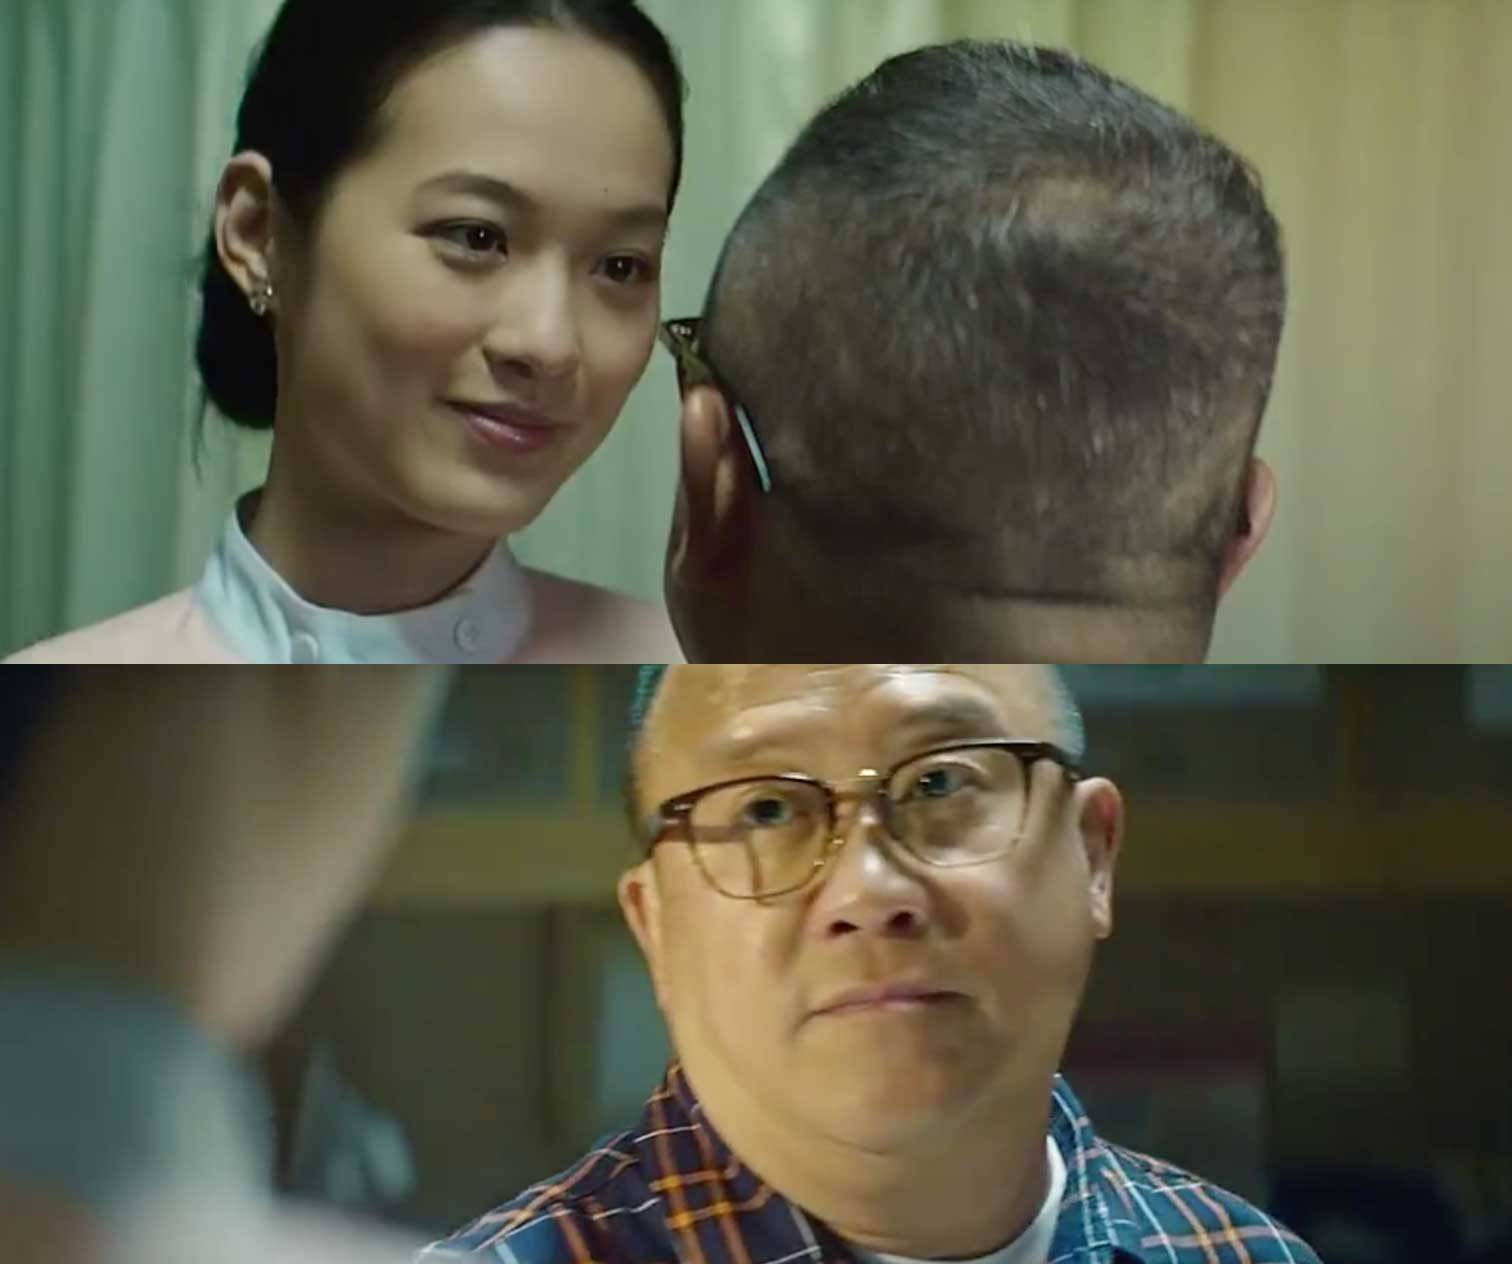 飛虎3壯志英雄 在電影《 香港仔 》中飾演護士一角，開場已經和曾志偉貼身肉搏，雖然戲份不多，但已經令到觀眾留下深刻印象